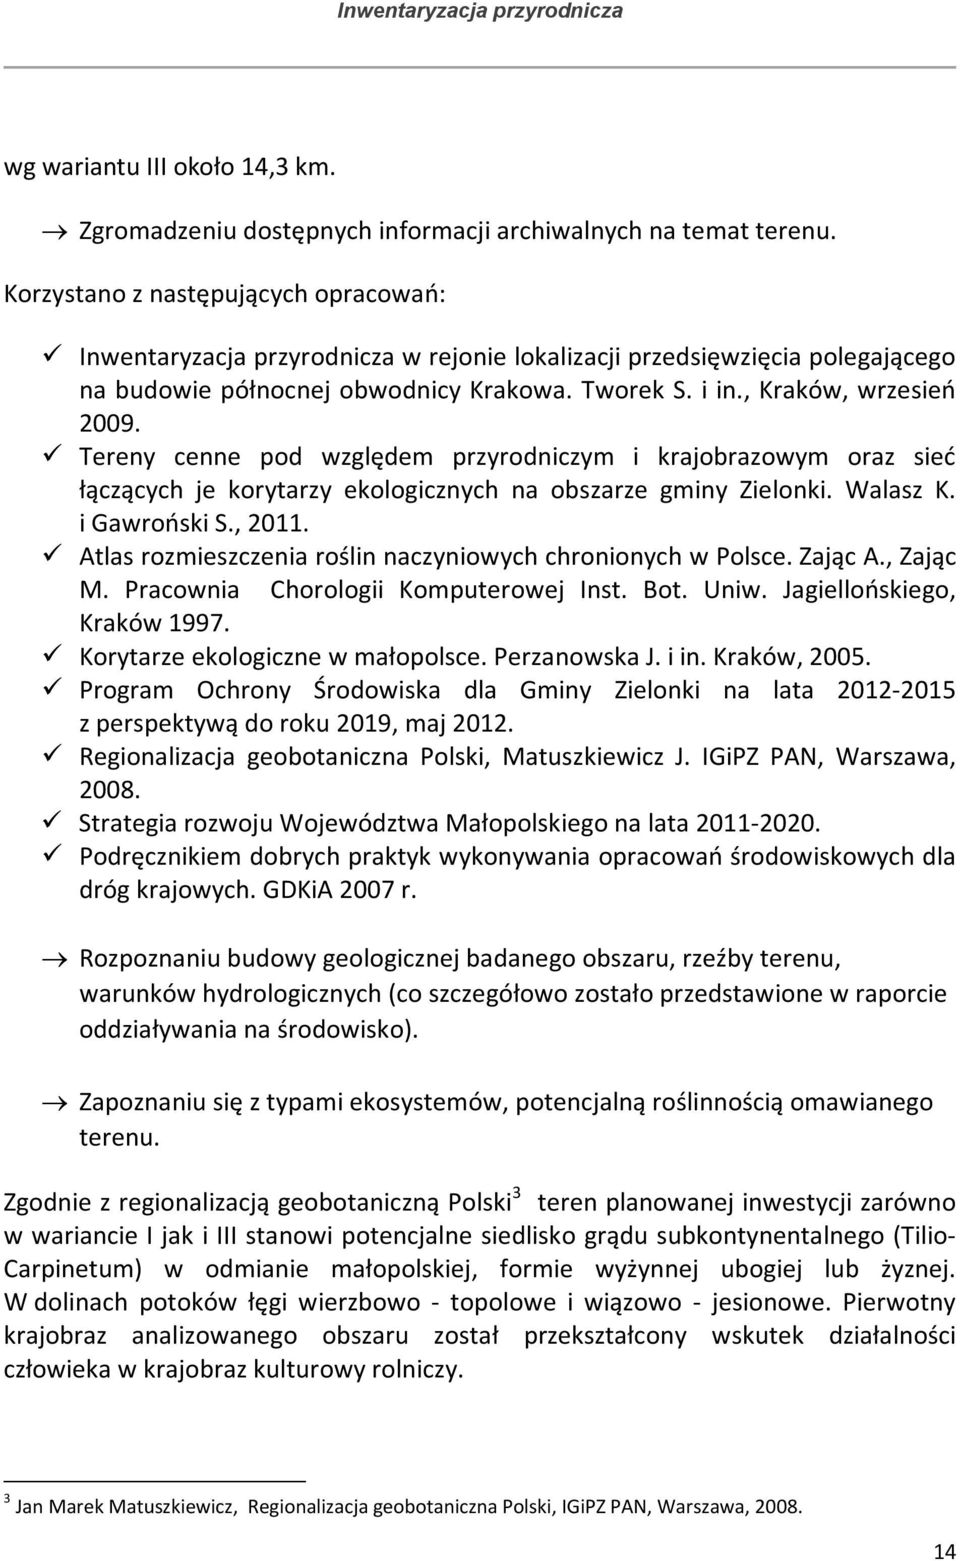 Tereny cenne pod względem przyrodniczym i krajobrazowym oraz sieć łączących je korytarzy ekologicznych na obszarze gminy Zielonki. Walasz K. i Gawroński S., 2011.